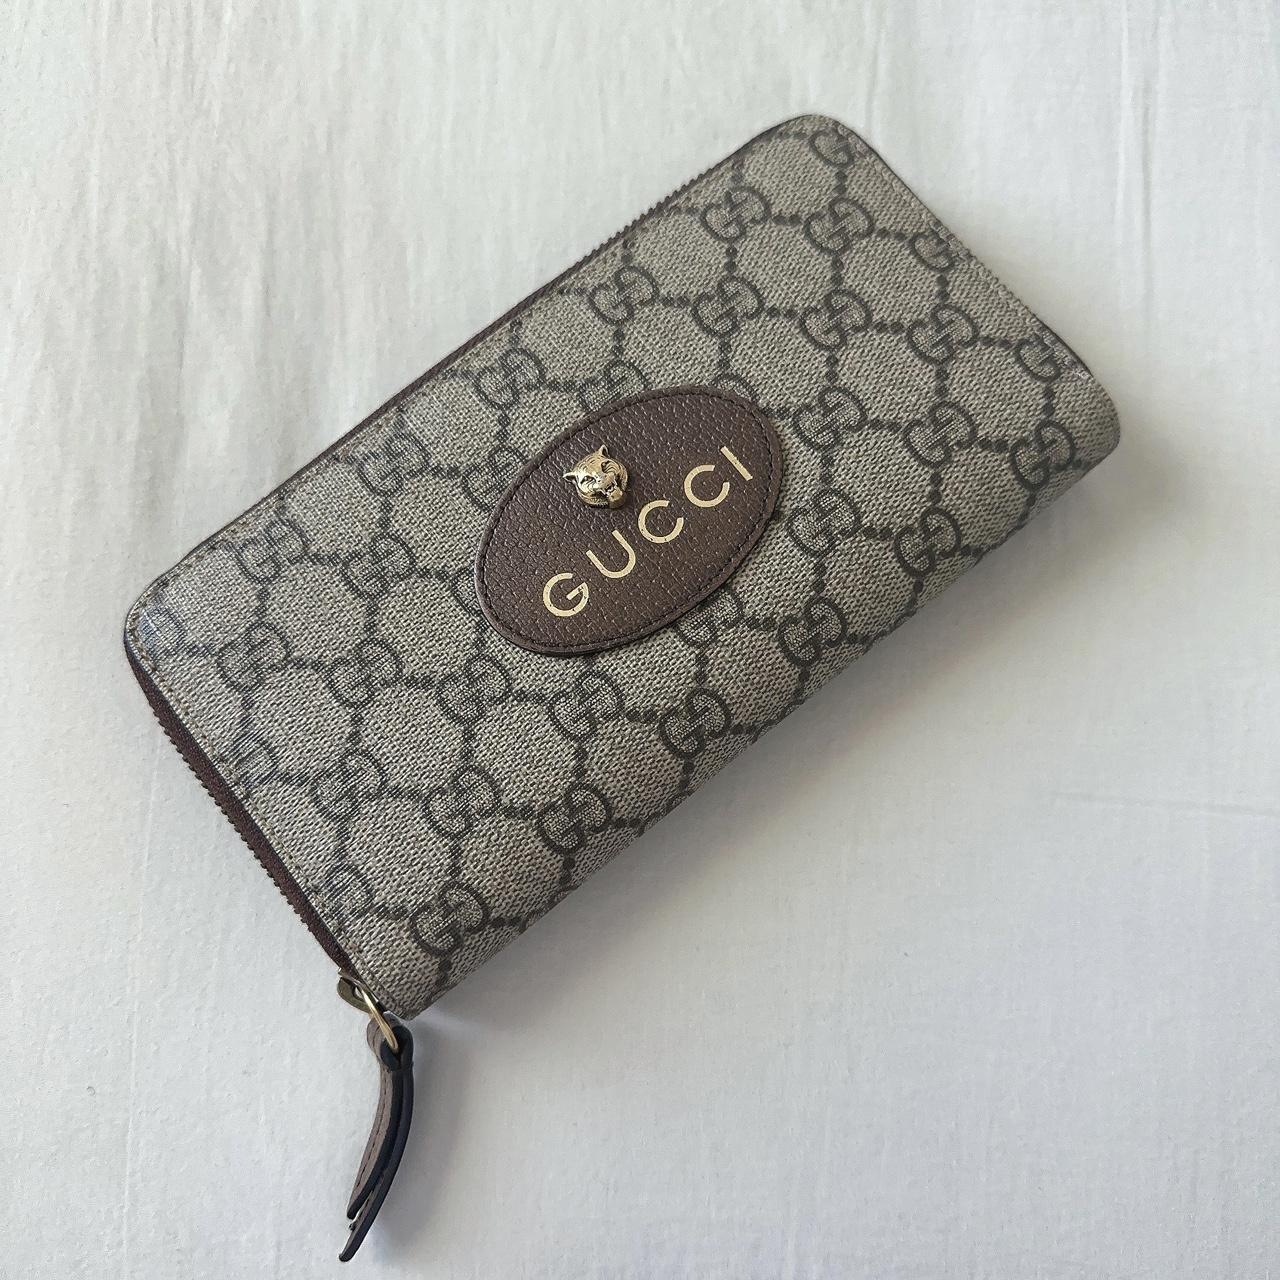 Gucci Neo Vintage GG Supreme Zip Around Wallet